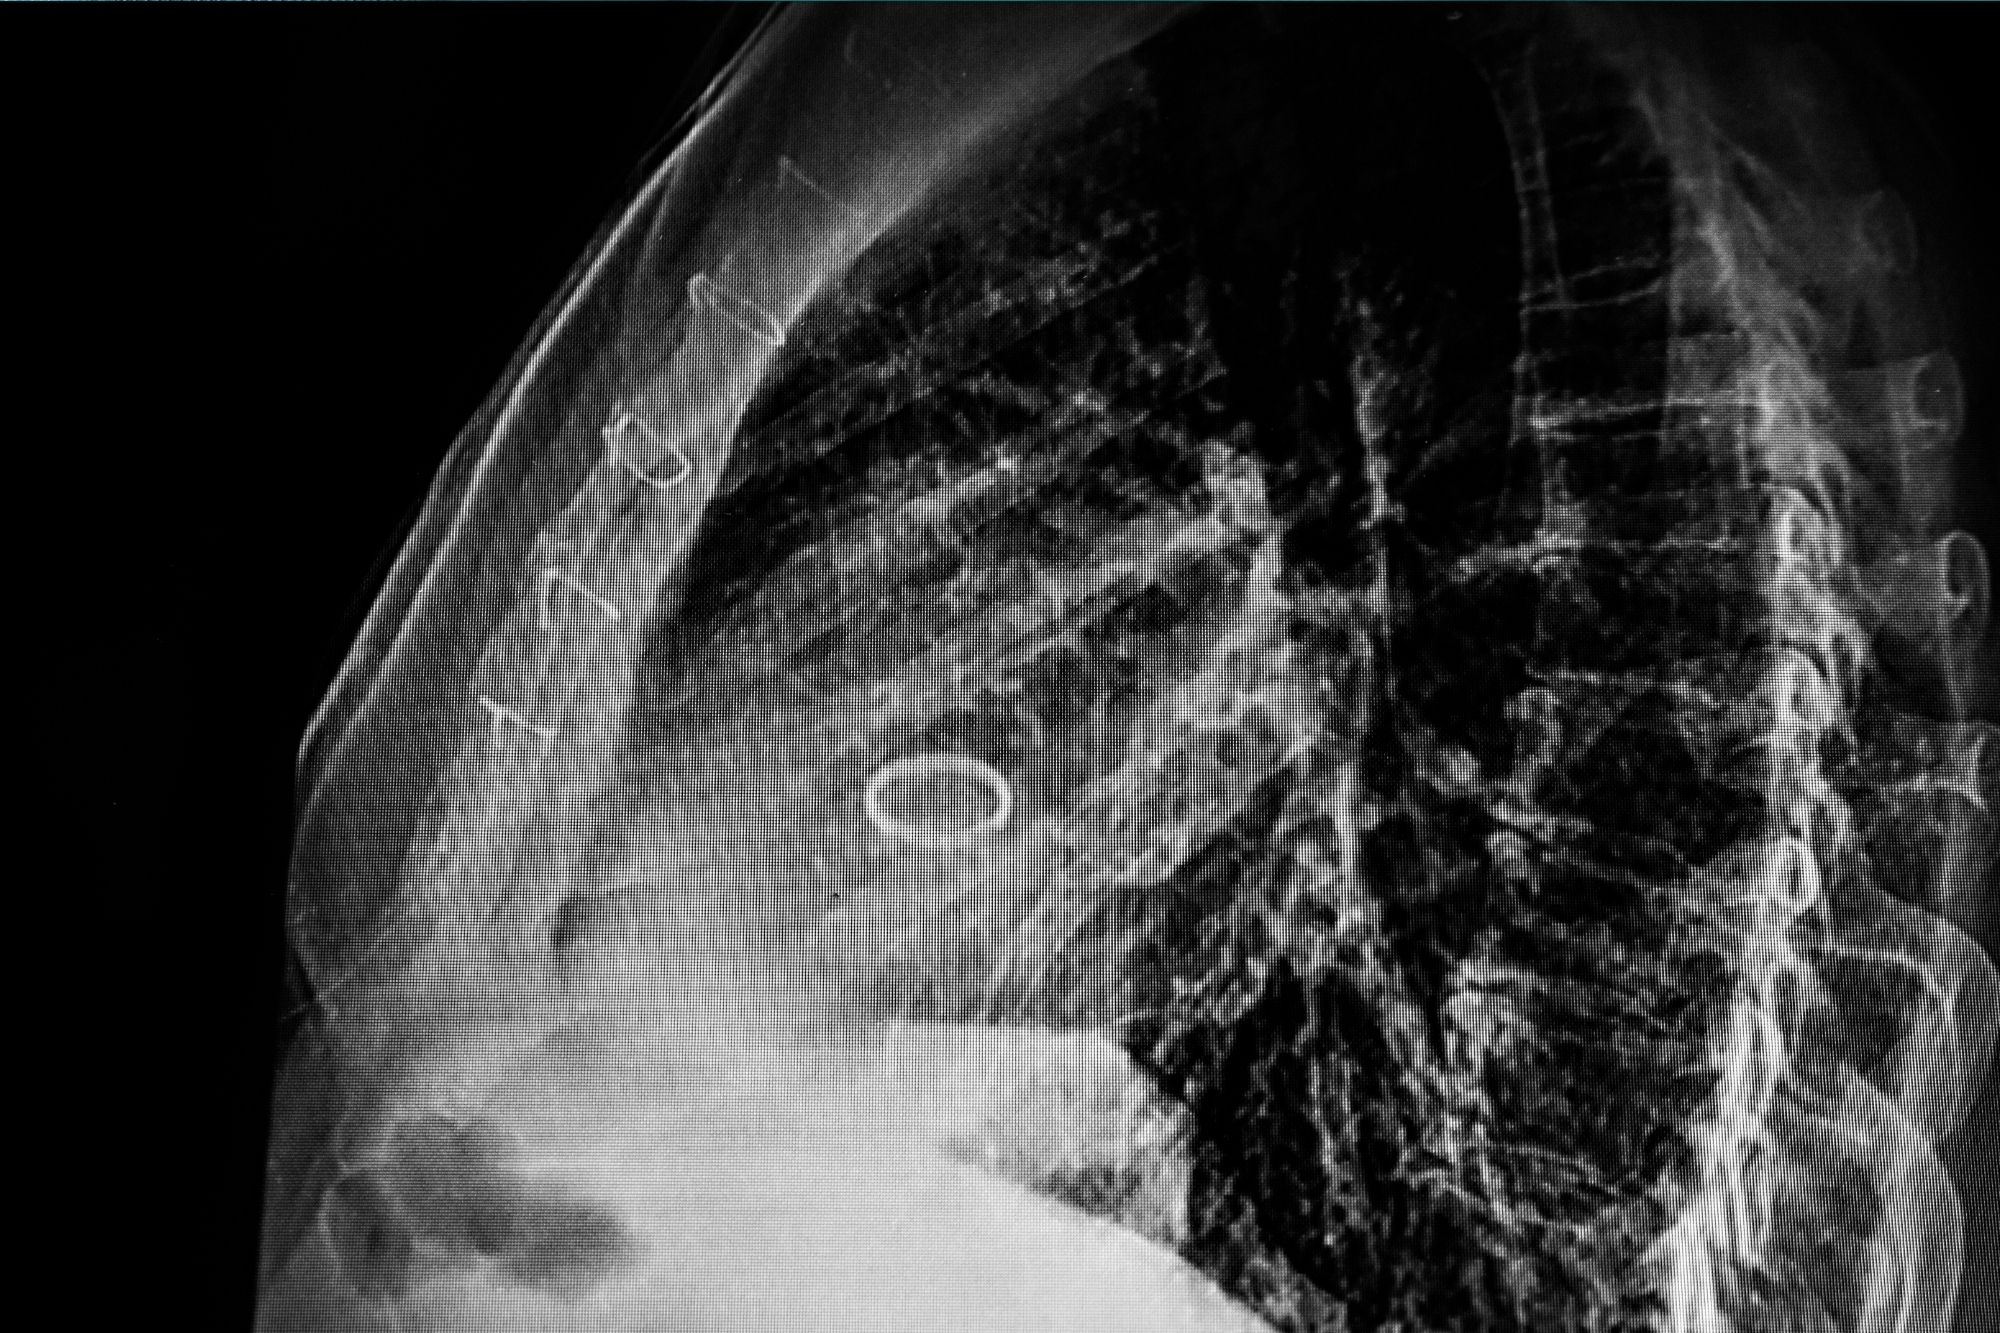 Remplacement de la valve aortique par voie transcathétérale en turquie